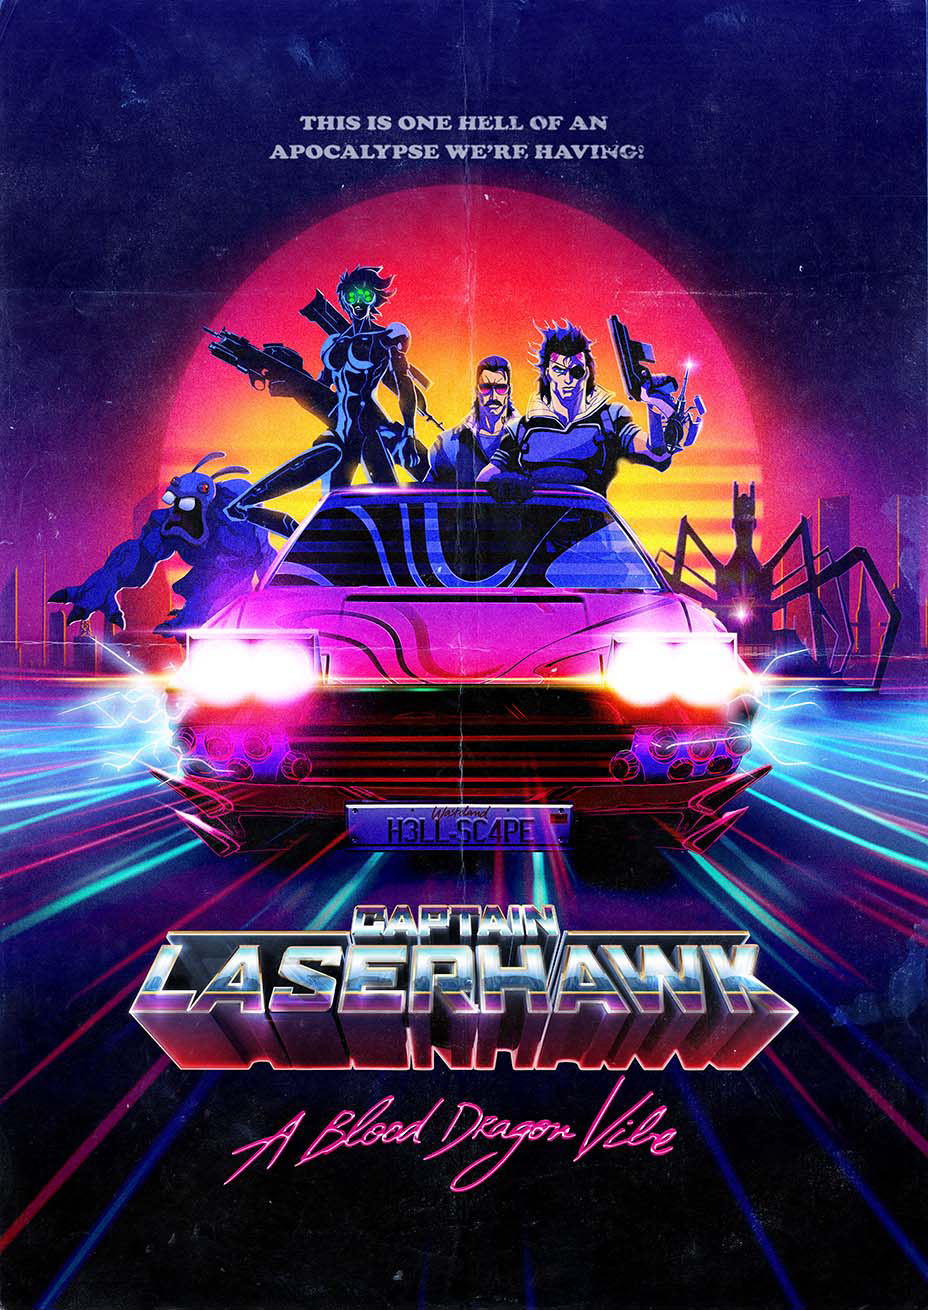 Xem Phim Đội trưởng Laserhawk: Blood Dragon Remix (Captain Laserhawk: A Blood Dragon Remix)